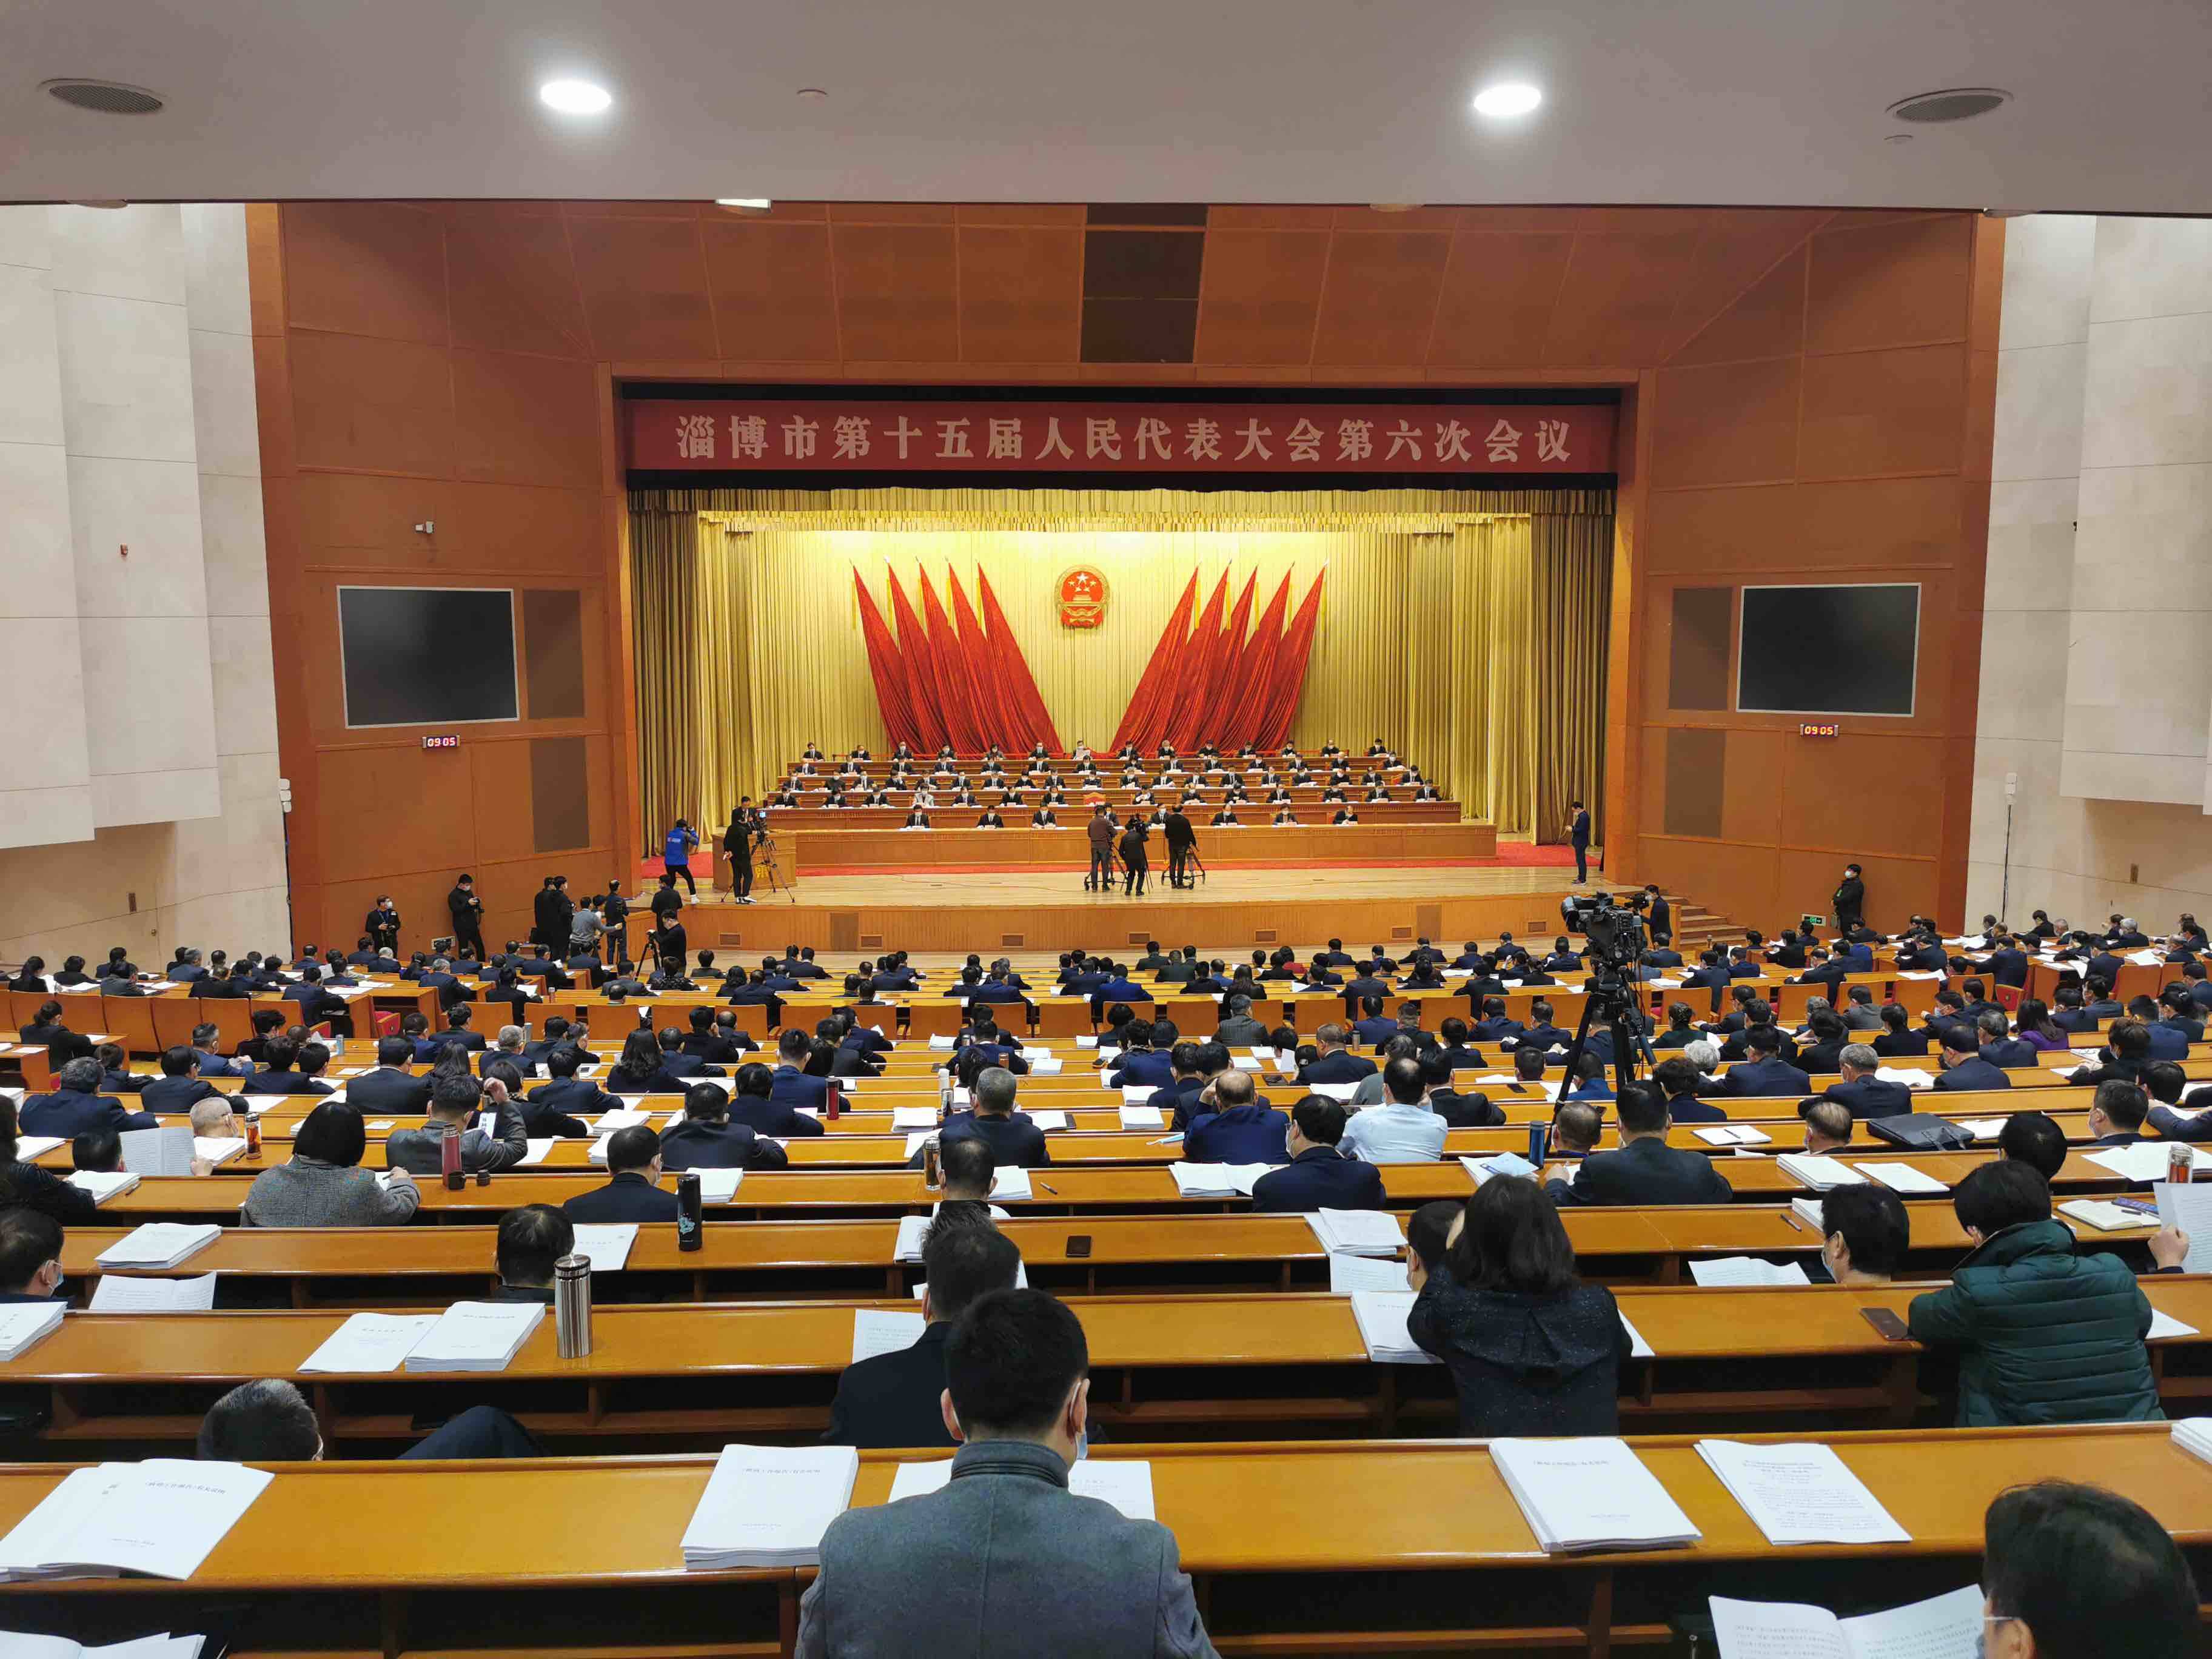 快讯丨淄博市第十五届人民代表大会第六次会议第一次全体会议开幕